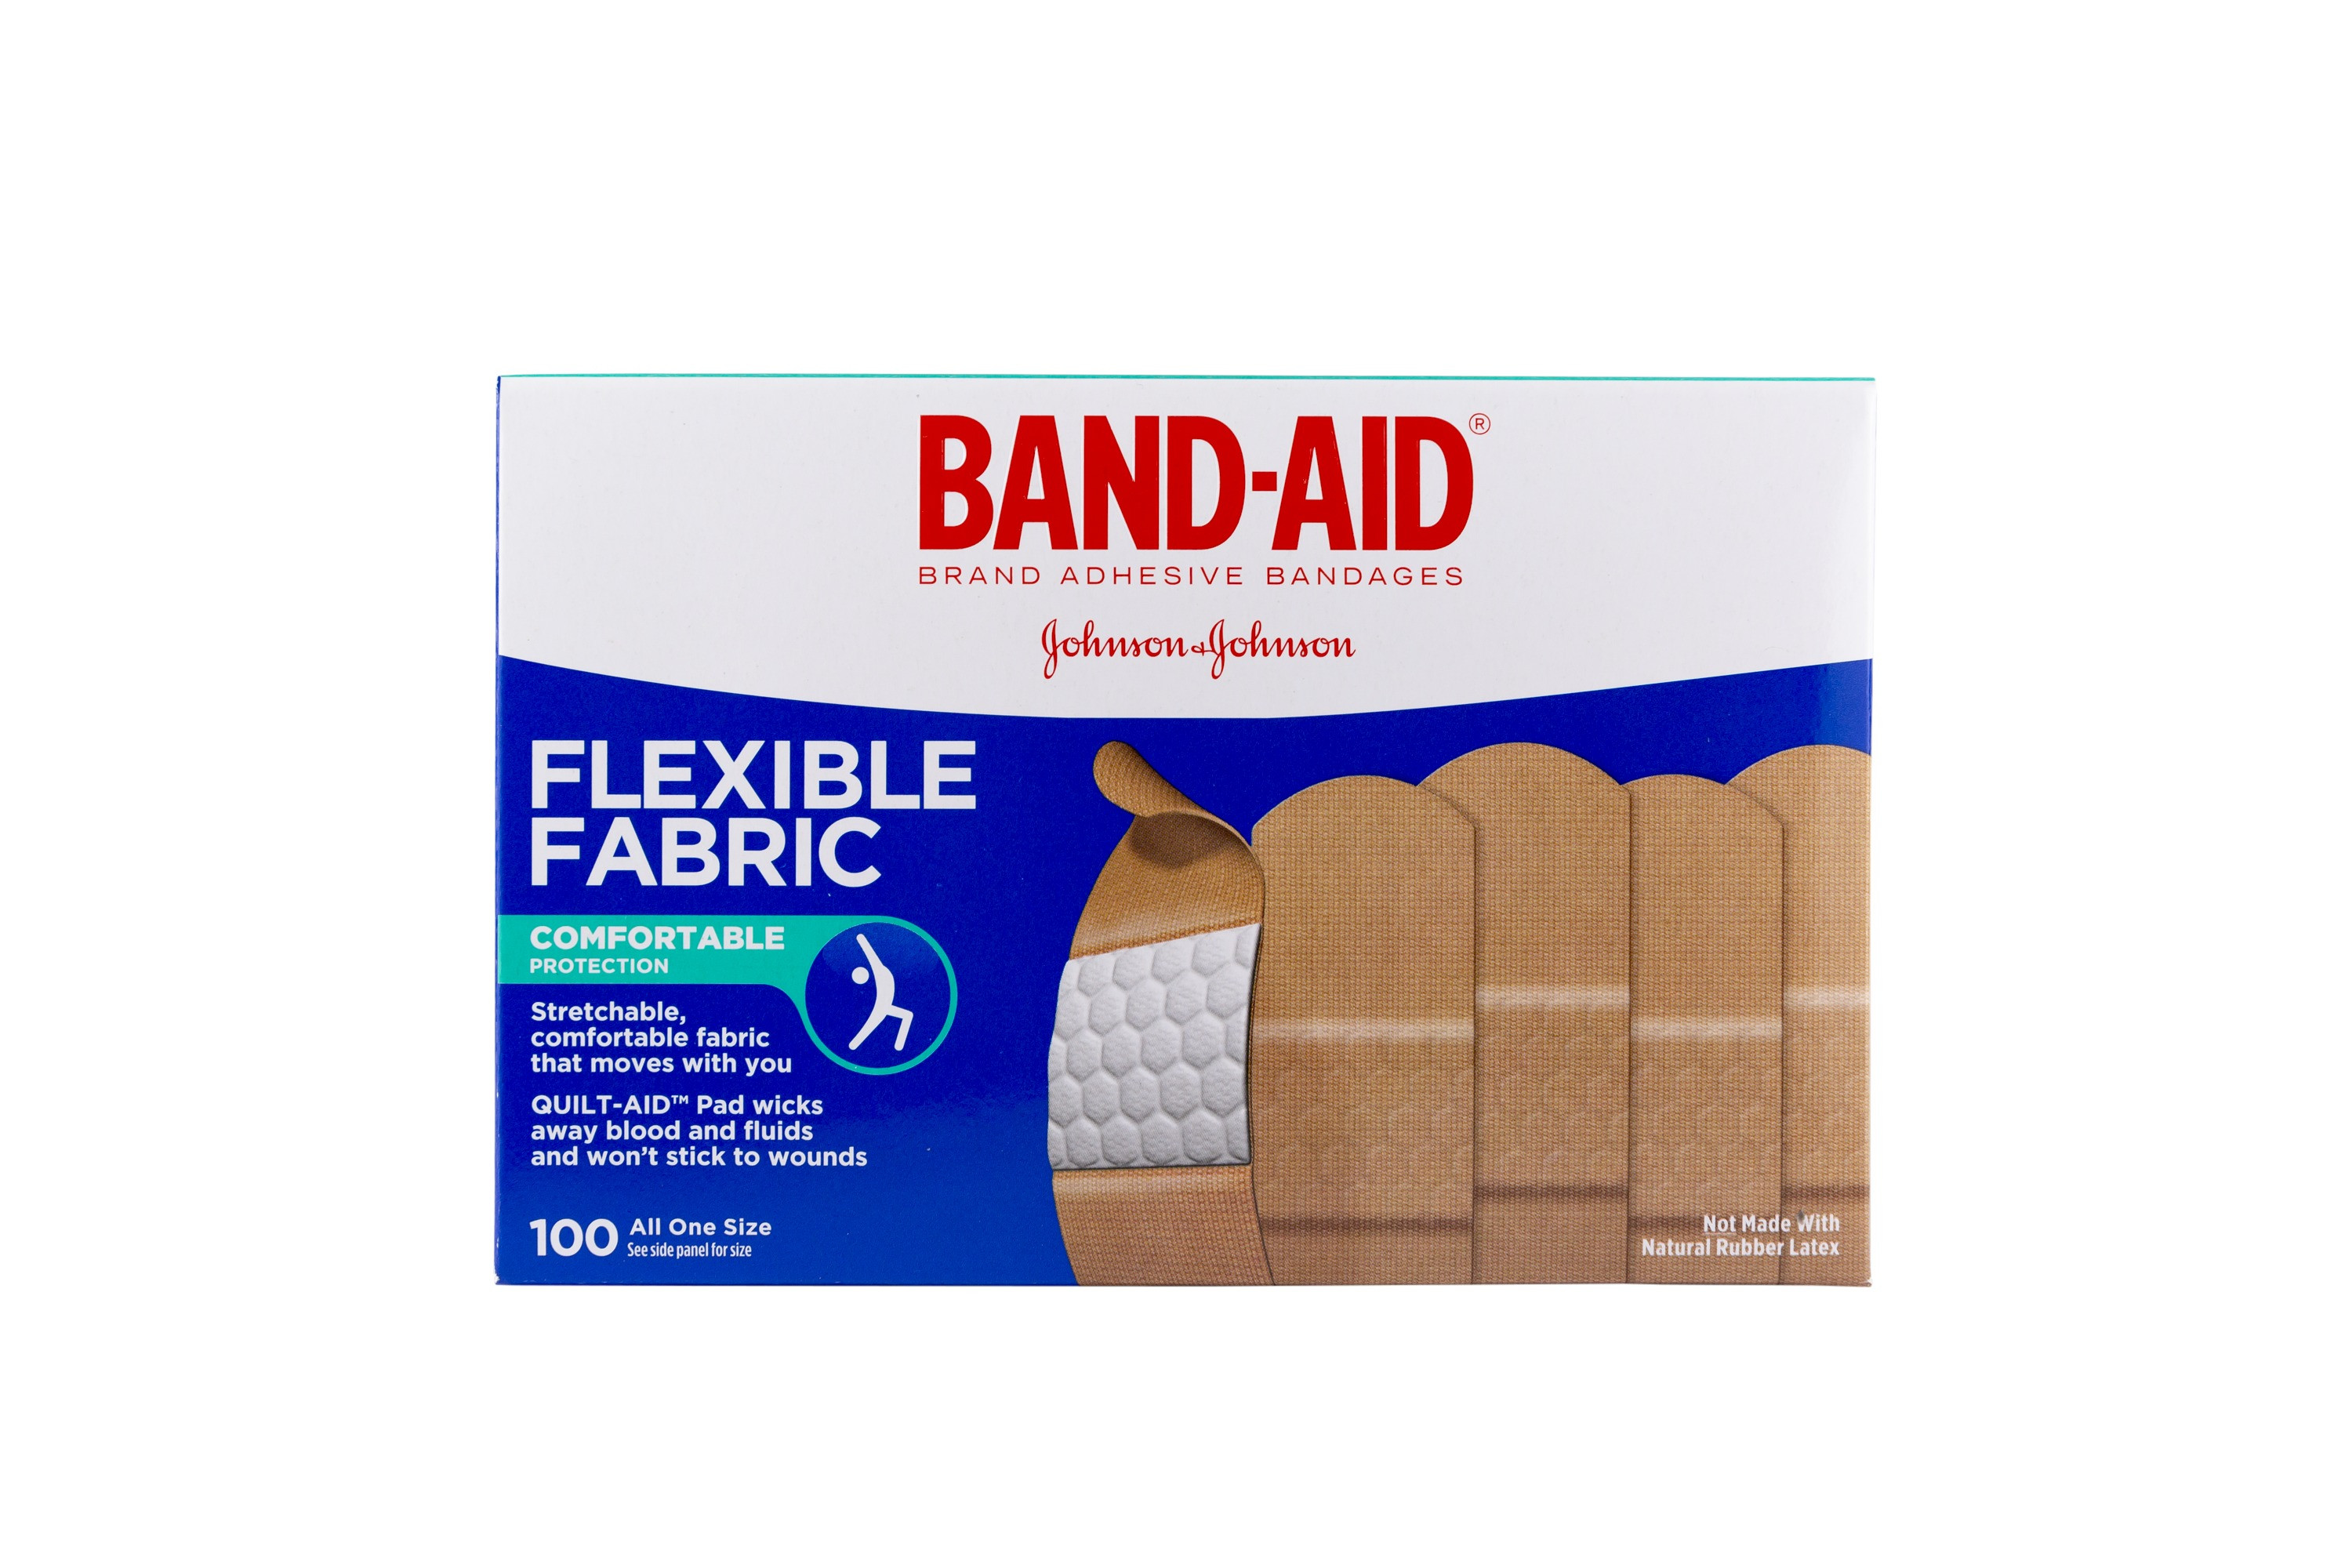 Flexible Elastic Bandage, 8 units